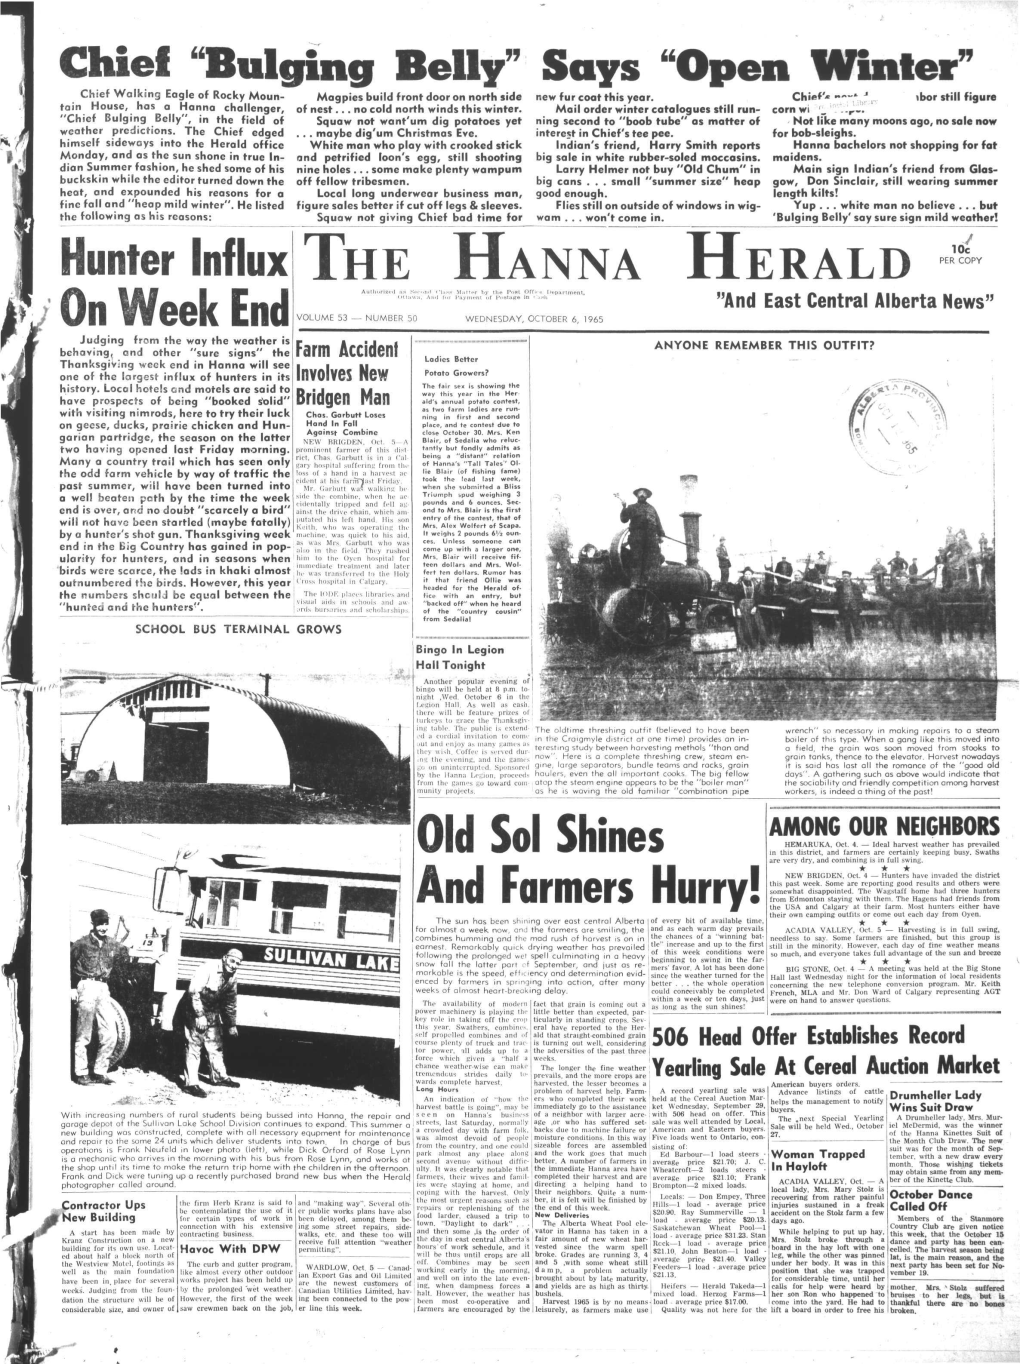 The Hanna Herald